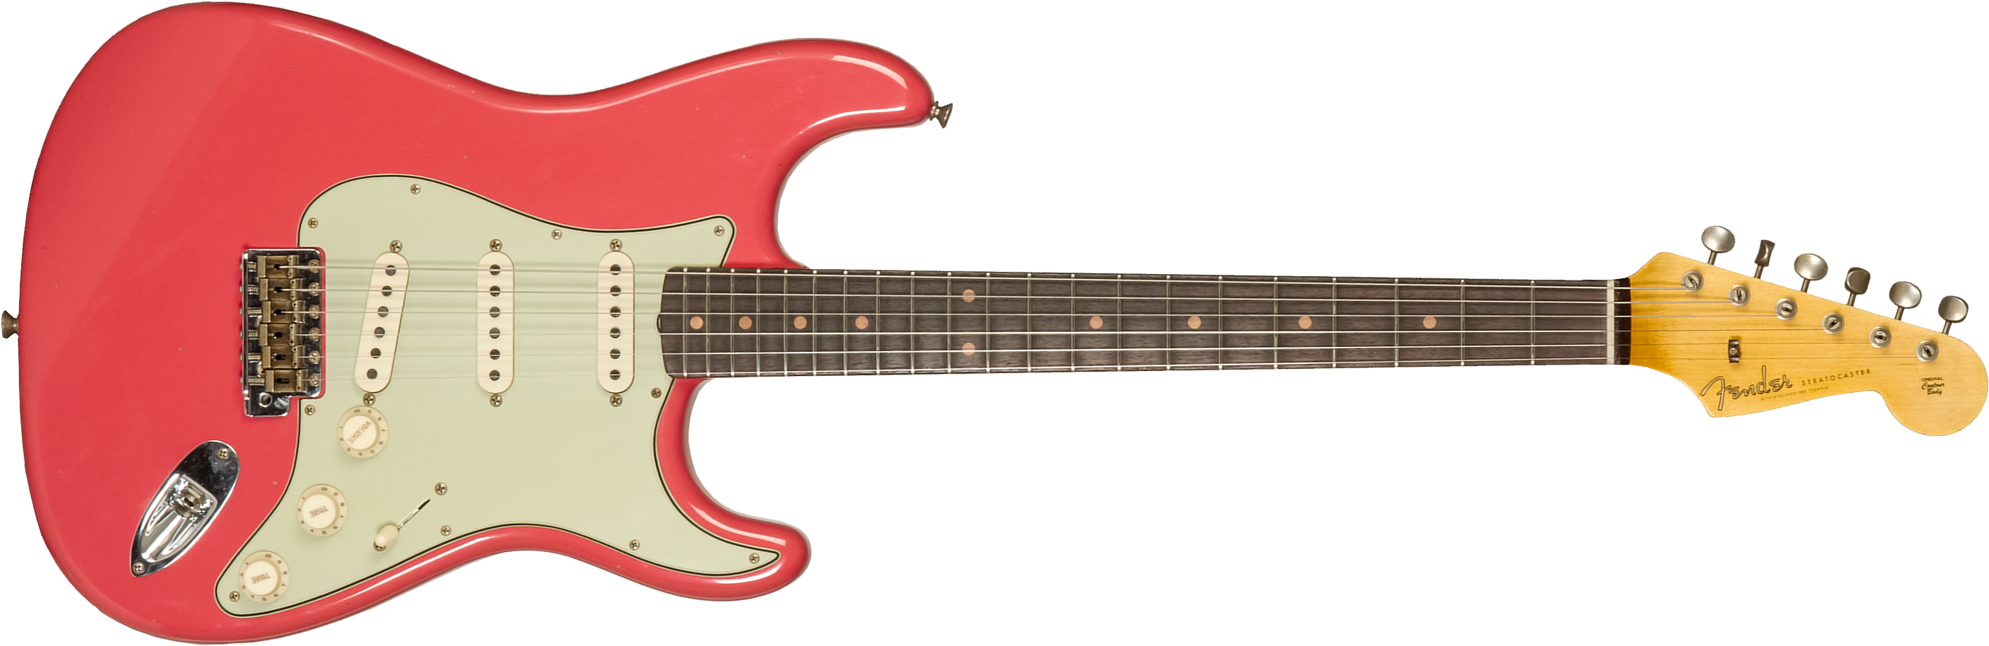 Fender Custom Shop Strat 1959 3s Trem Rw #cz571088 - Journeyman Relic Aged Fiesta Red - Guitare Électrique Forme Str - Main picture